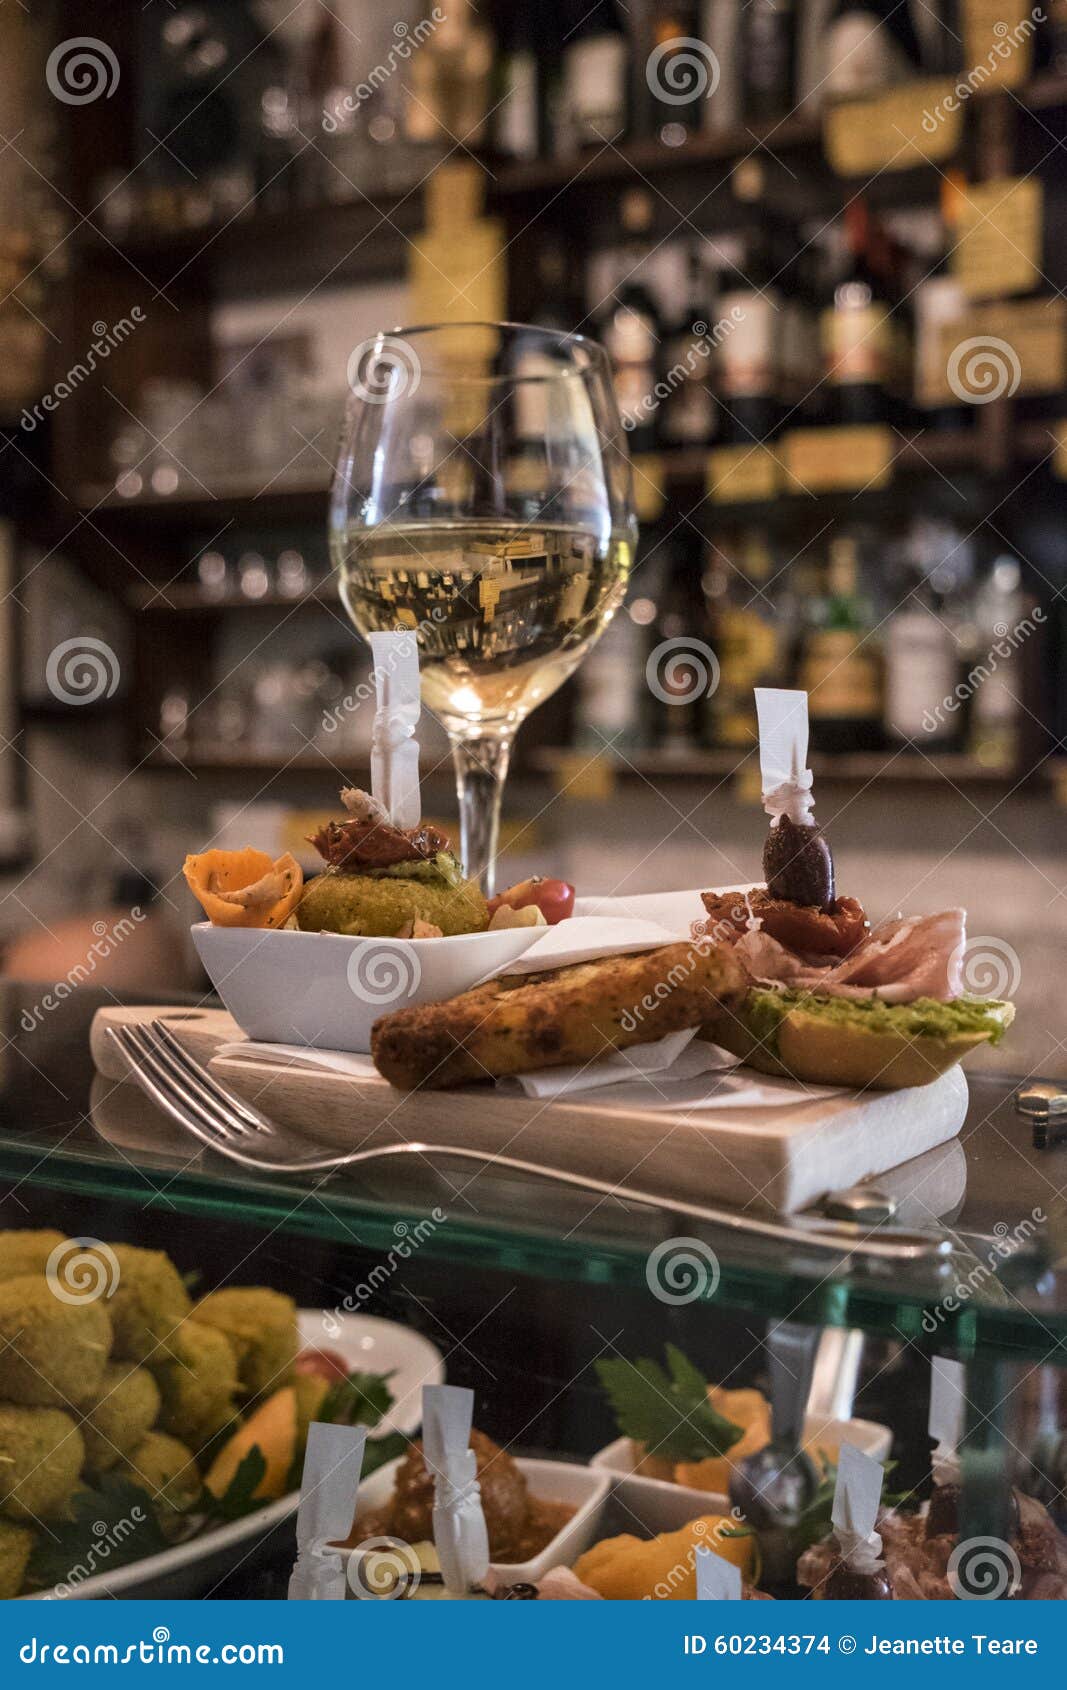 cichetti and wine at a venetian osteria